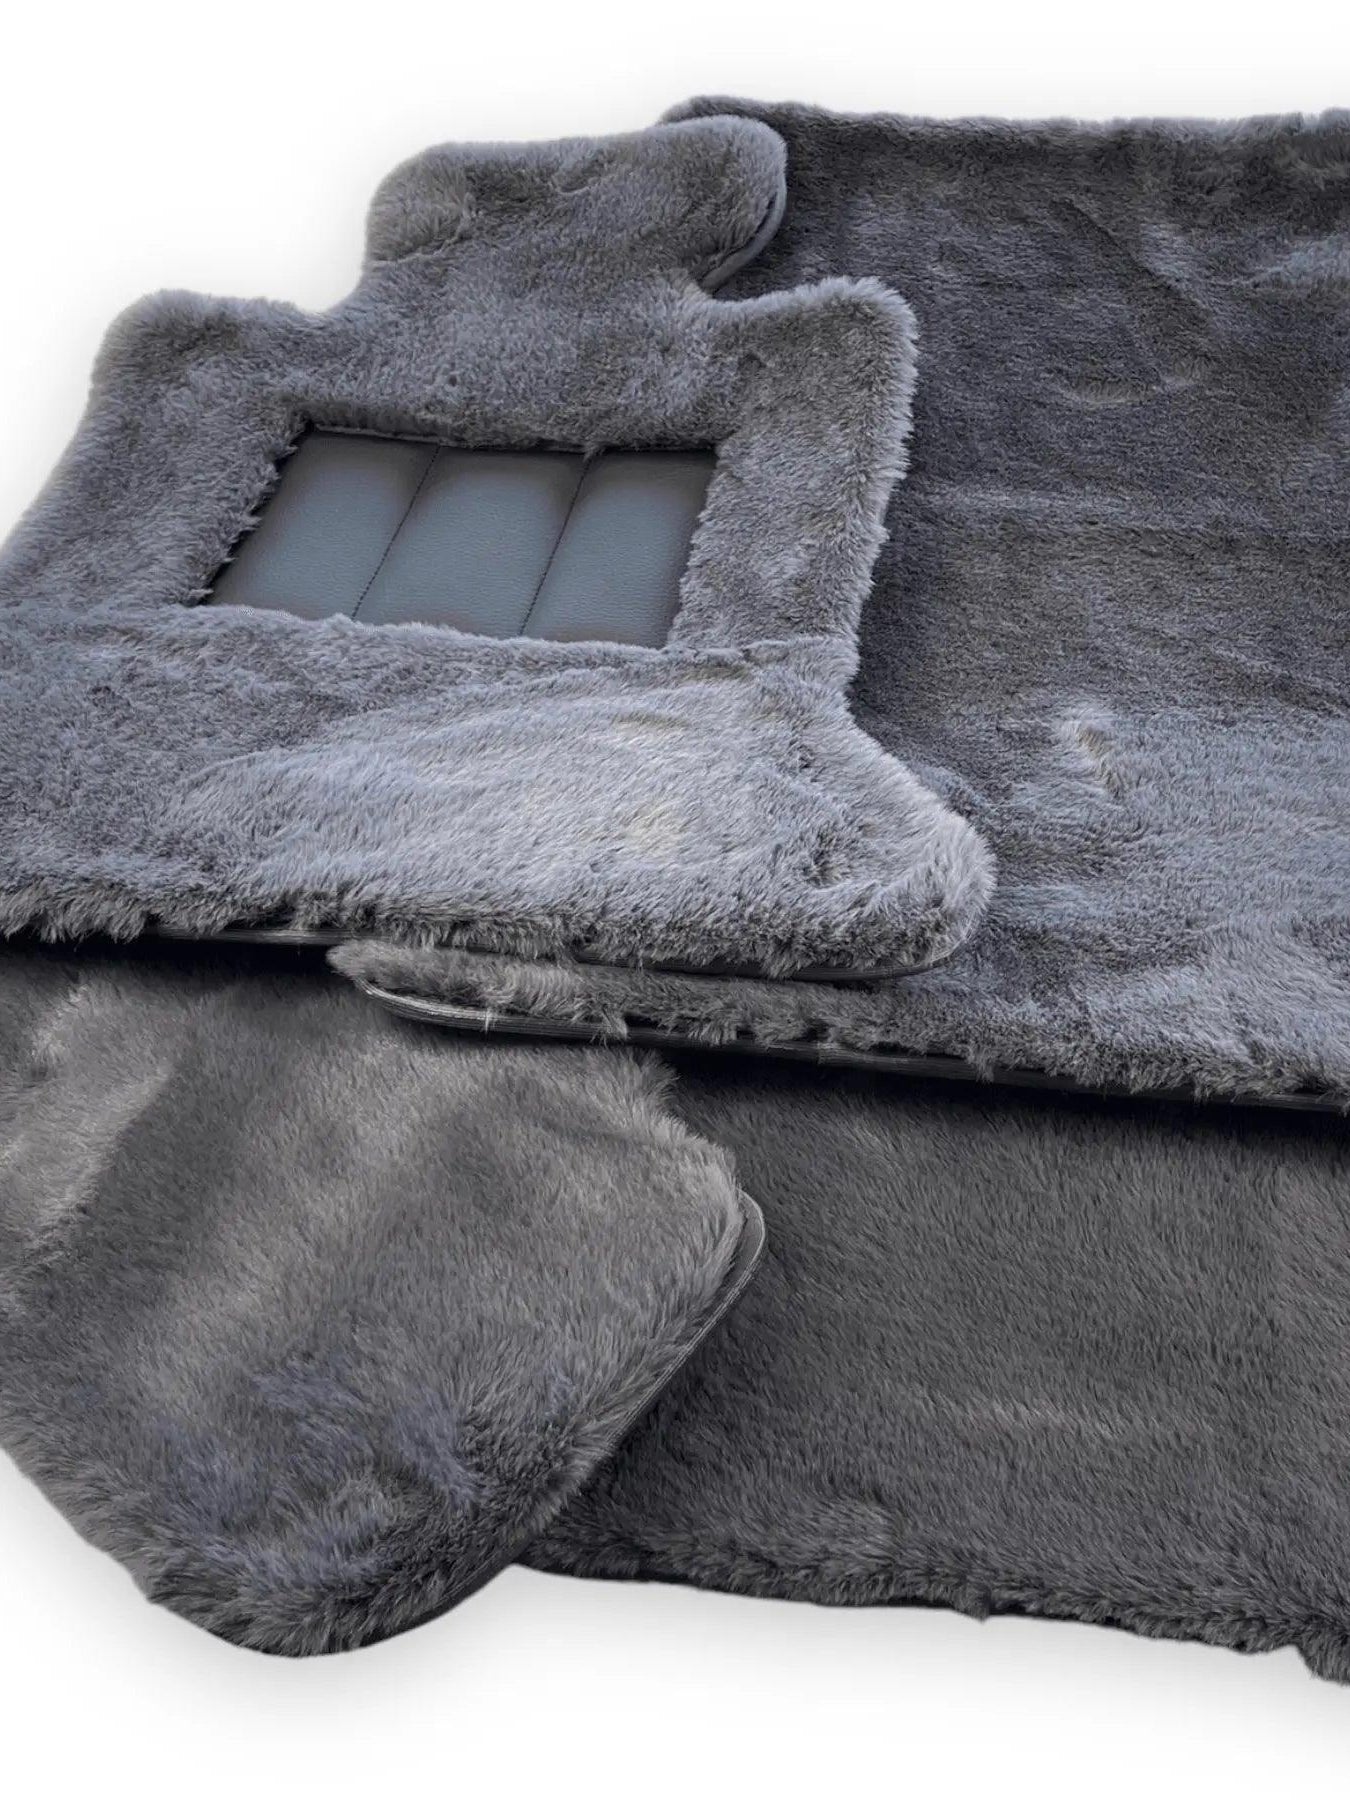 Dark Gray Sheepskin Floor Mats For Bentley Flying Spur (2013-2019) Er56 Design Brand - AutoWin